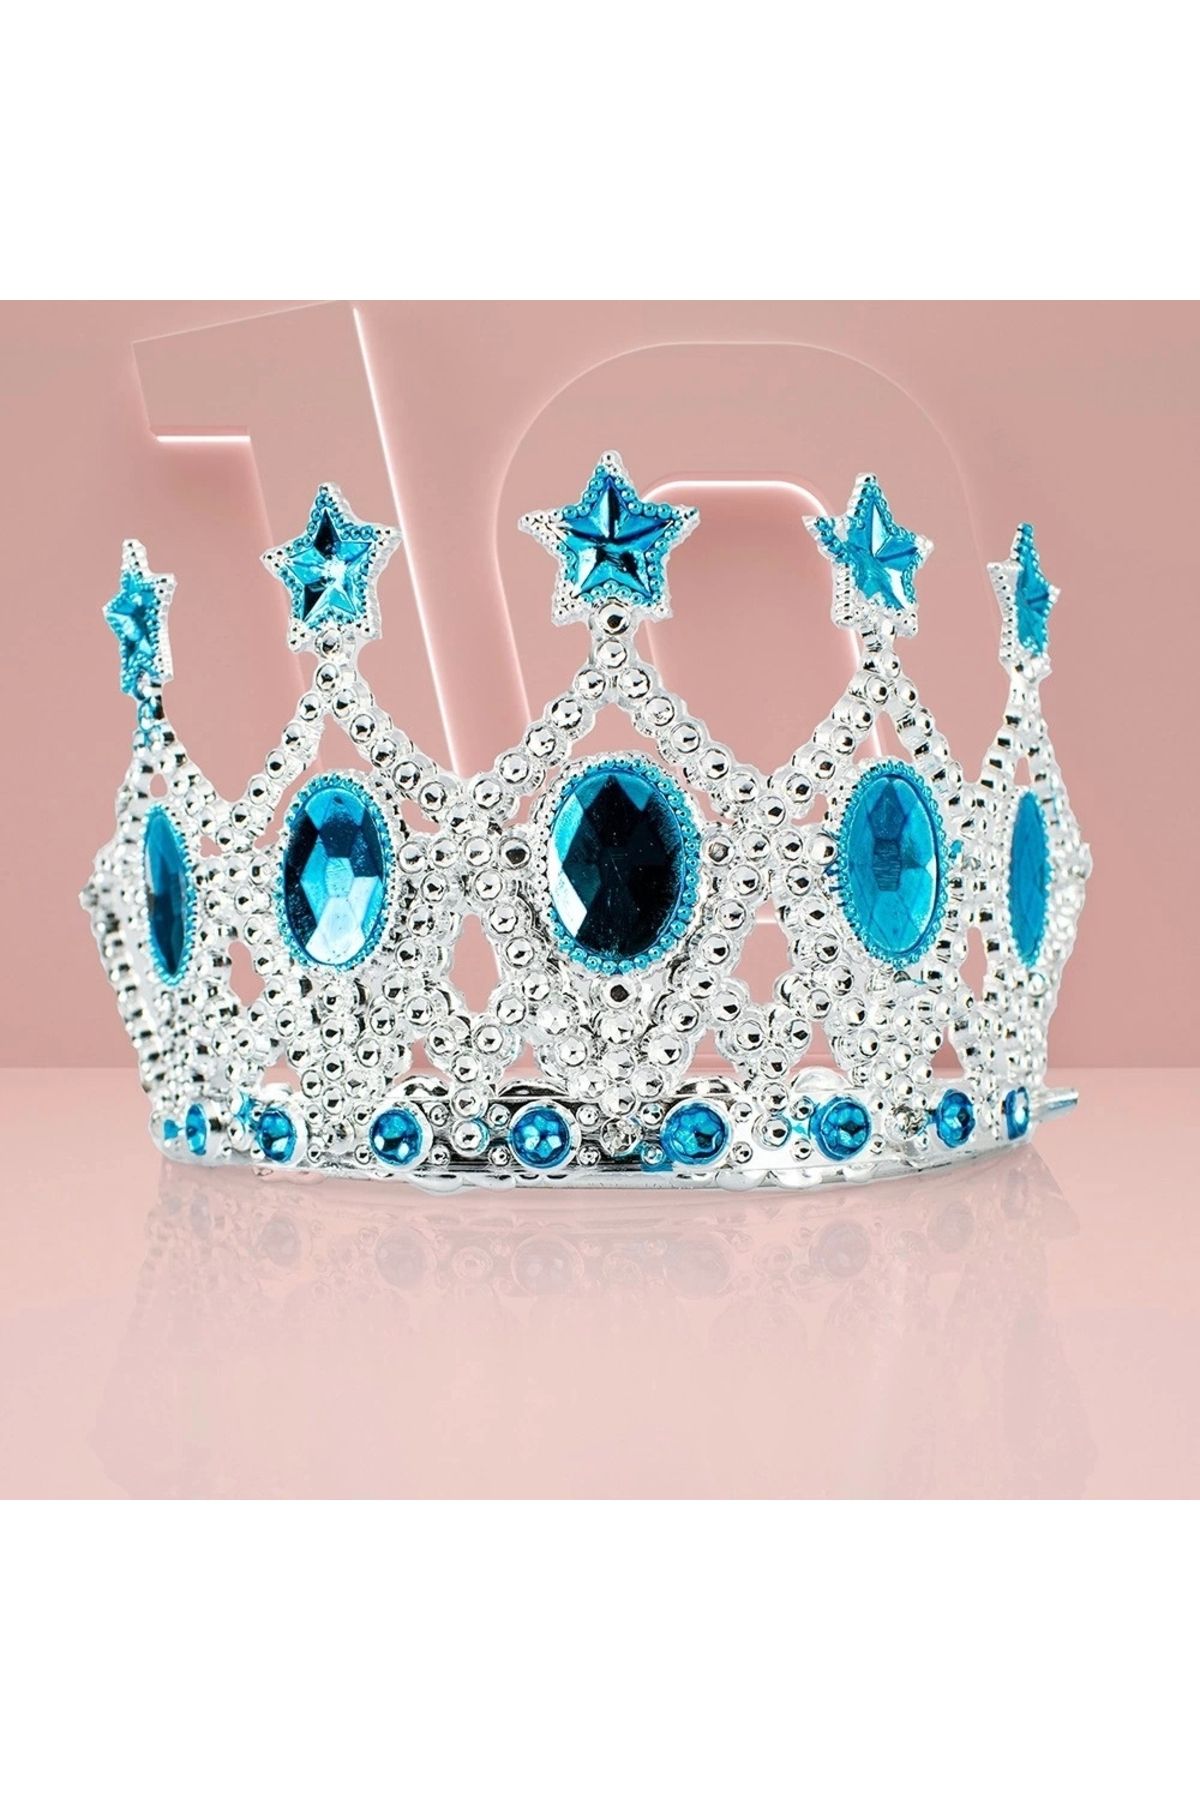 Genel Markalar Çocuk Kraliçe Tacı - Mavi Yıldız Işlemeli Prenses Tacı 15x7 Cm